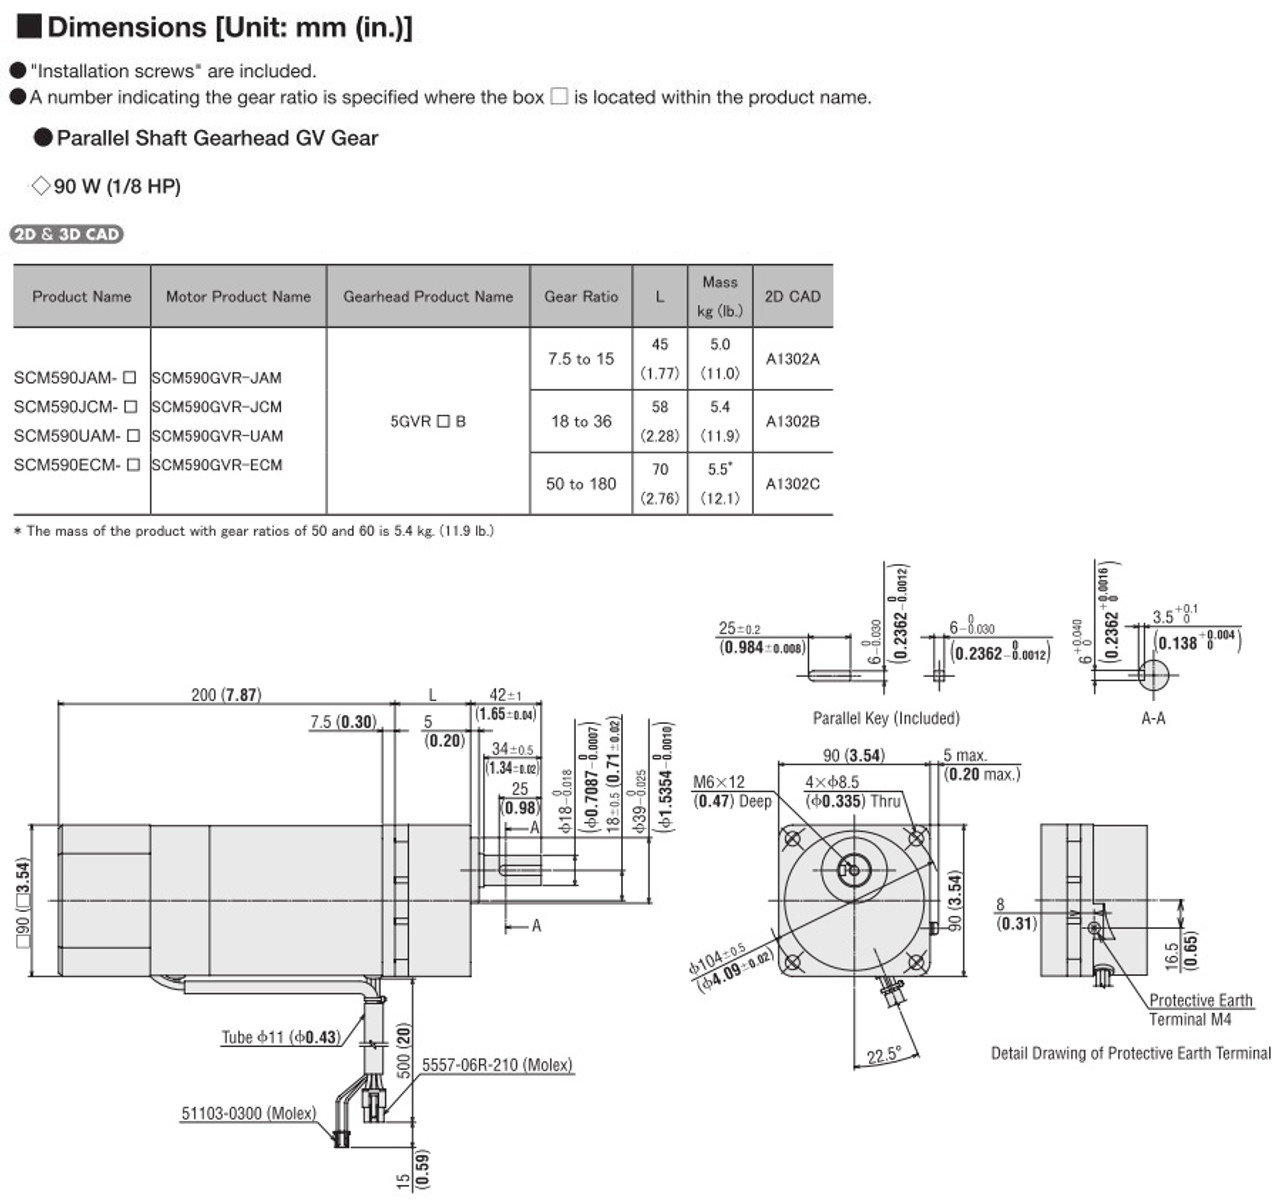 SCM590UAM-75 - Dimensions